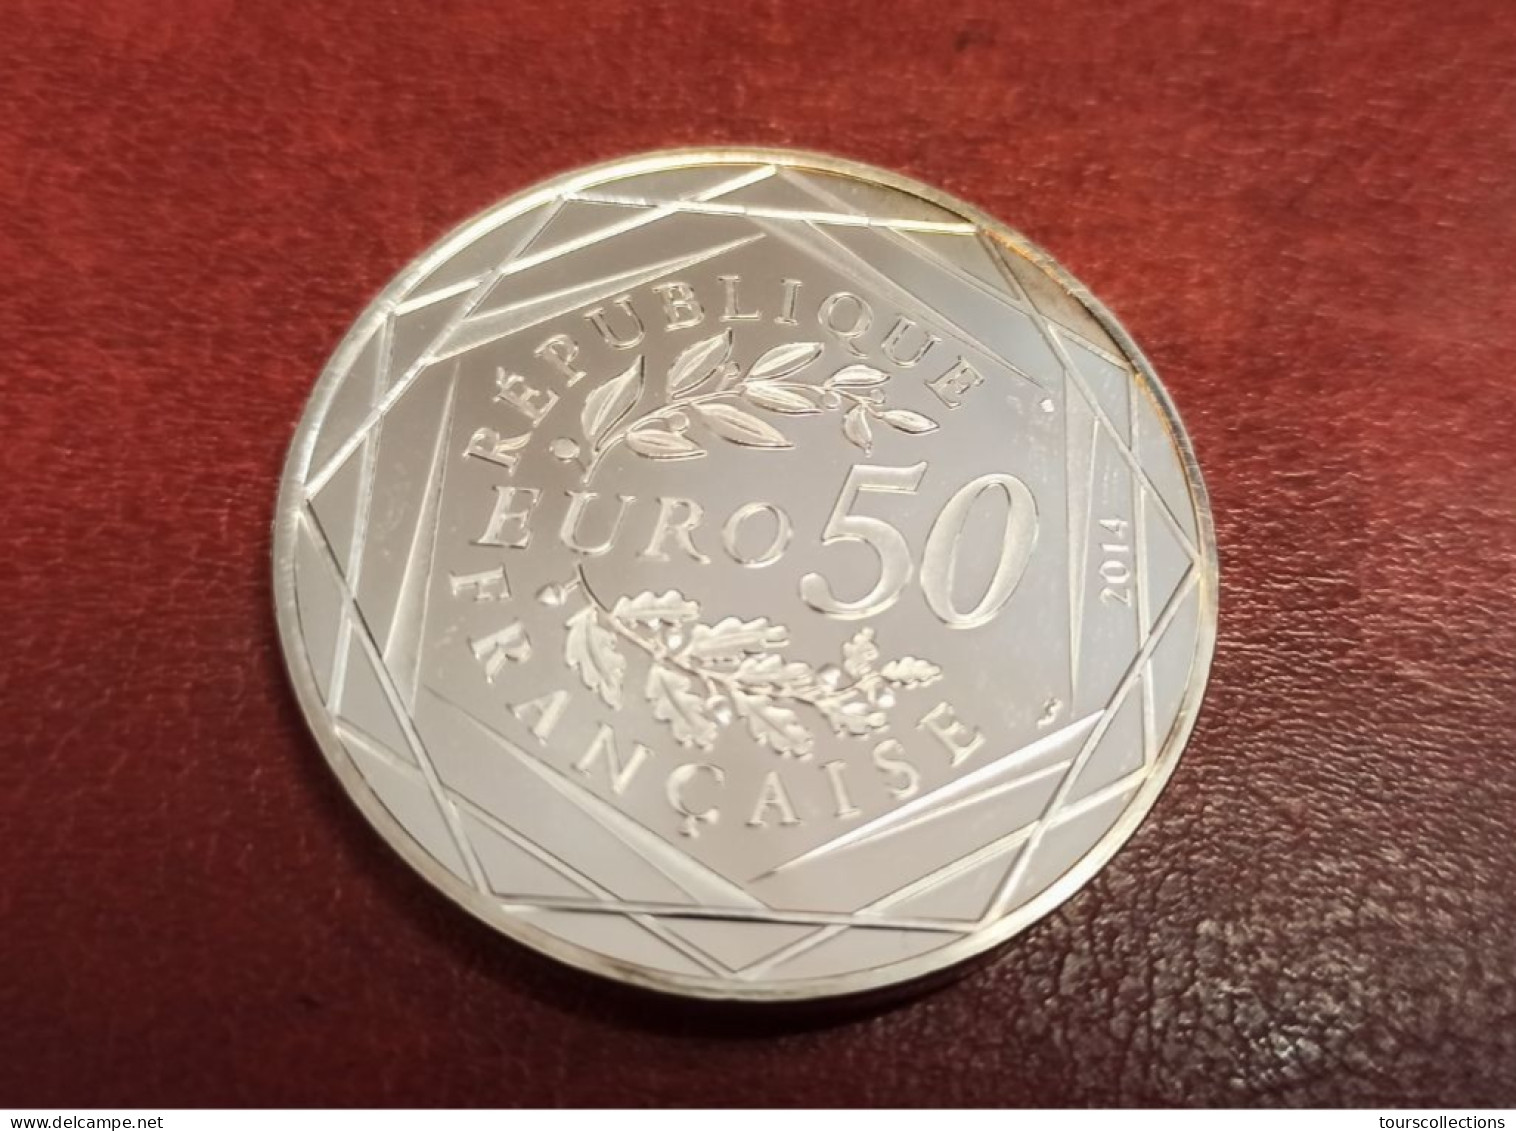 50 EUROS ARGENT FRANCE OISEAU PAIX Par Sempé - 41 Mm Pour 41 Grammes à 90% - MONNAIE DE PARIS 2014 Printemps / Eté - Francia